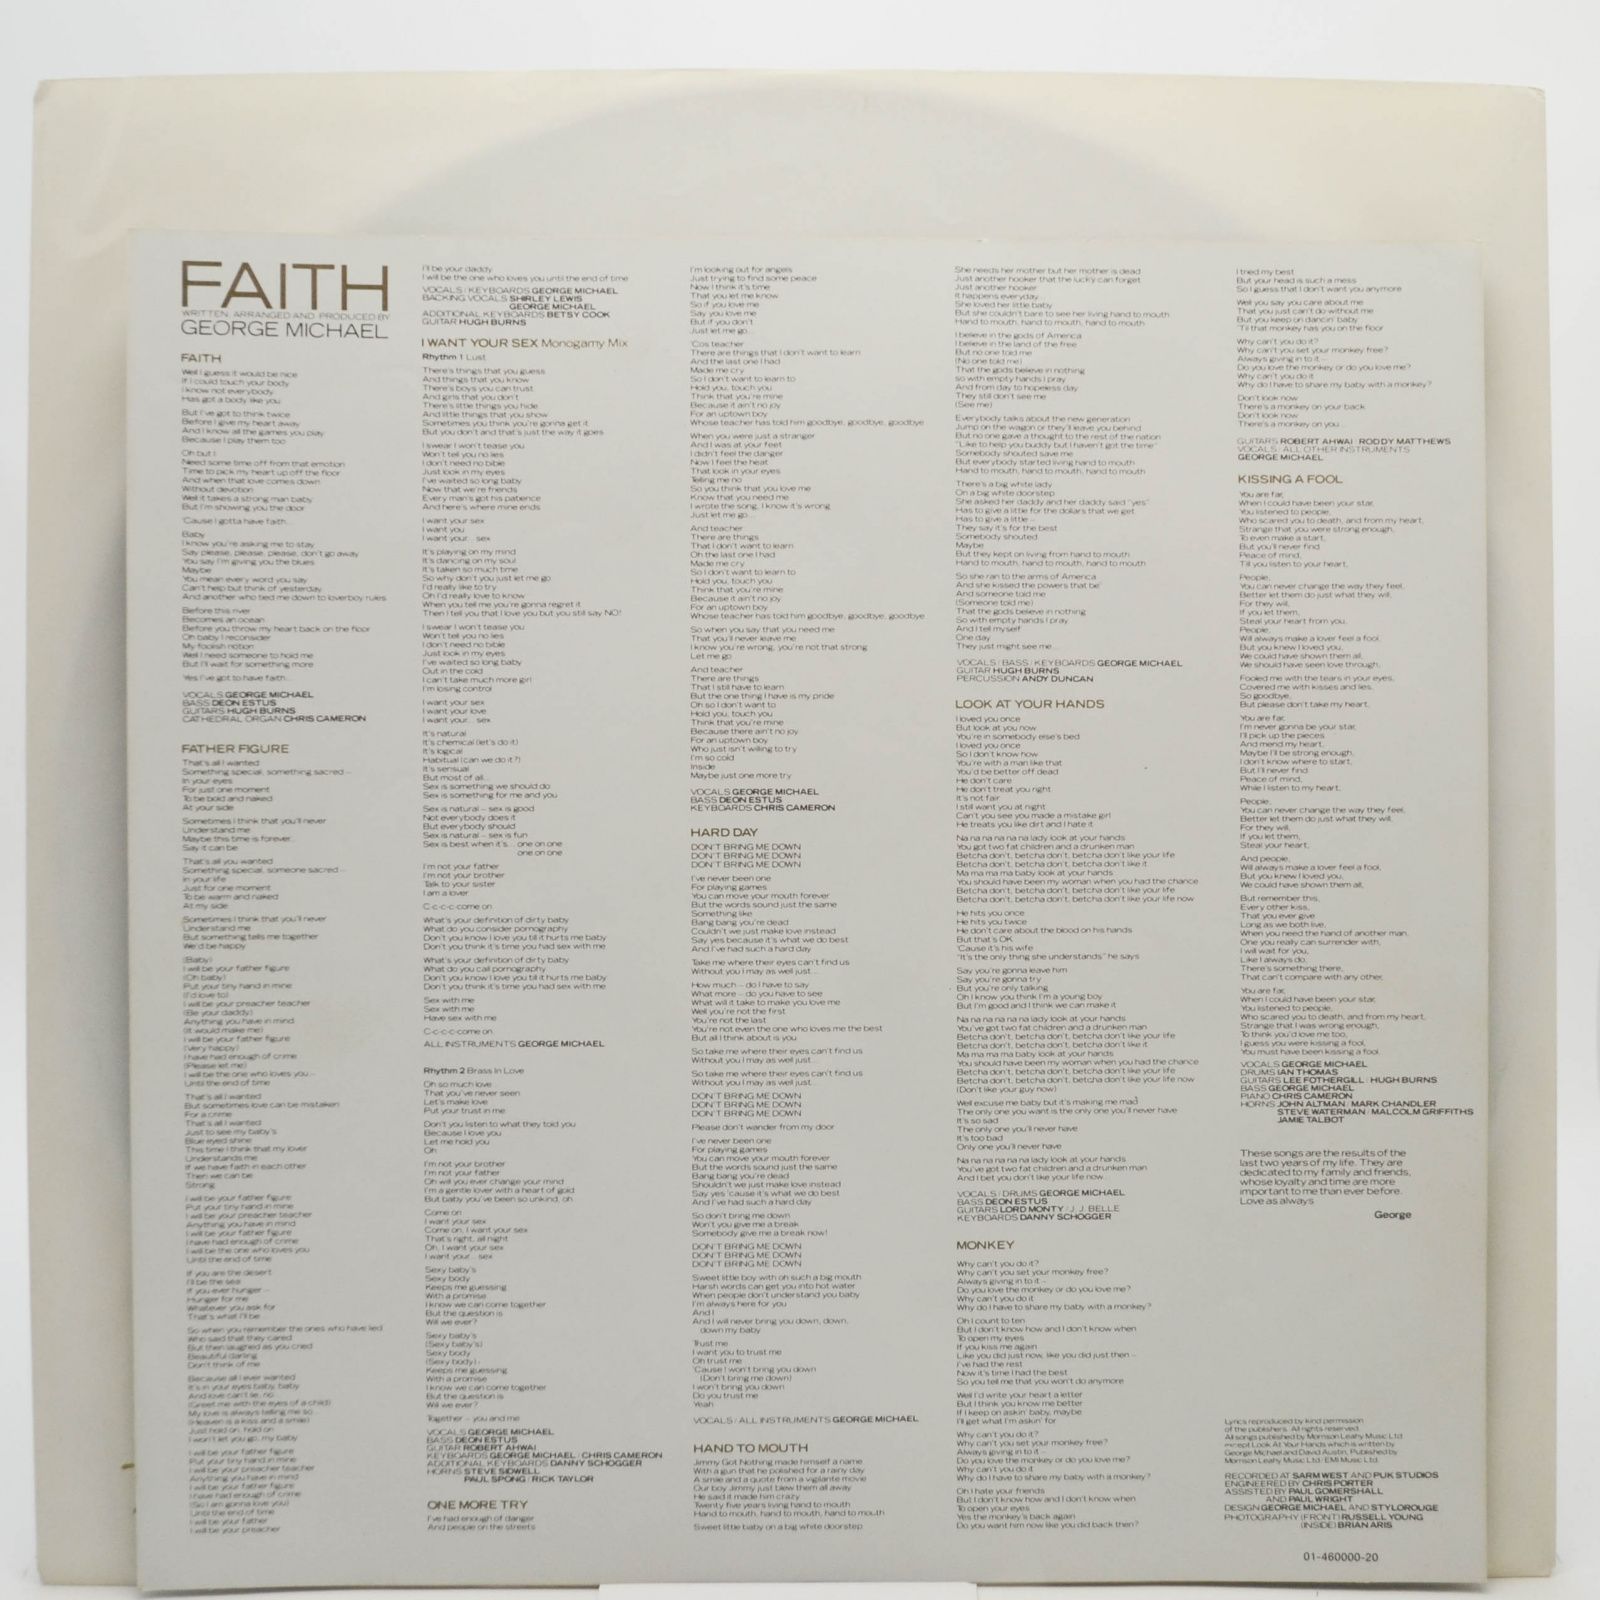 George Michael — Faith, 1987